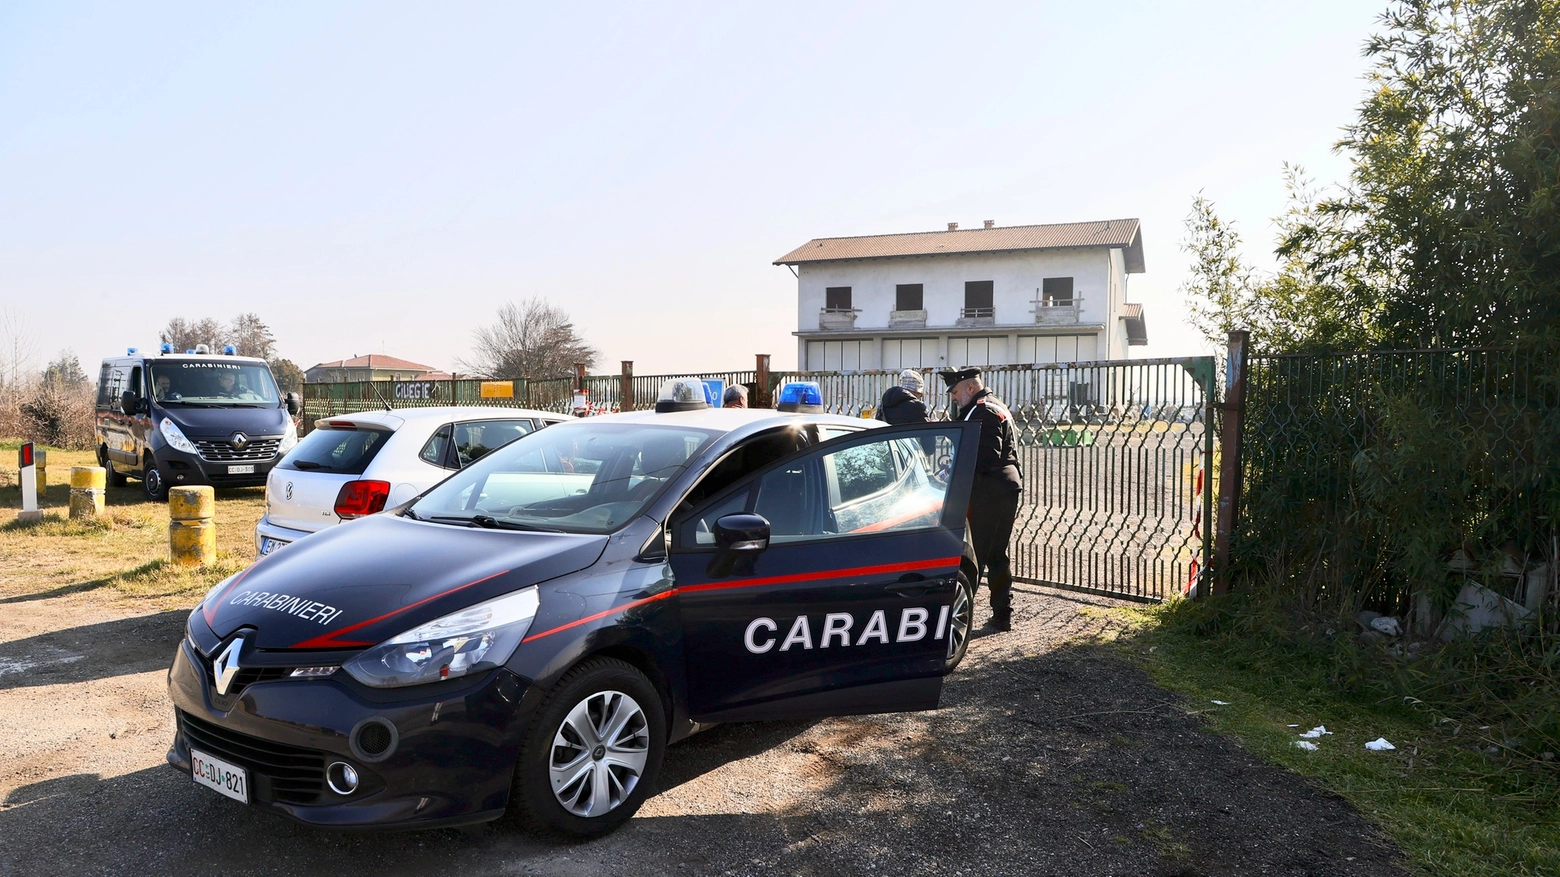 Sul furto indagano i carabinieri per risalire alla banda di ladri (foto archivio)